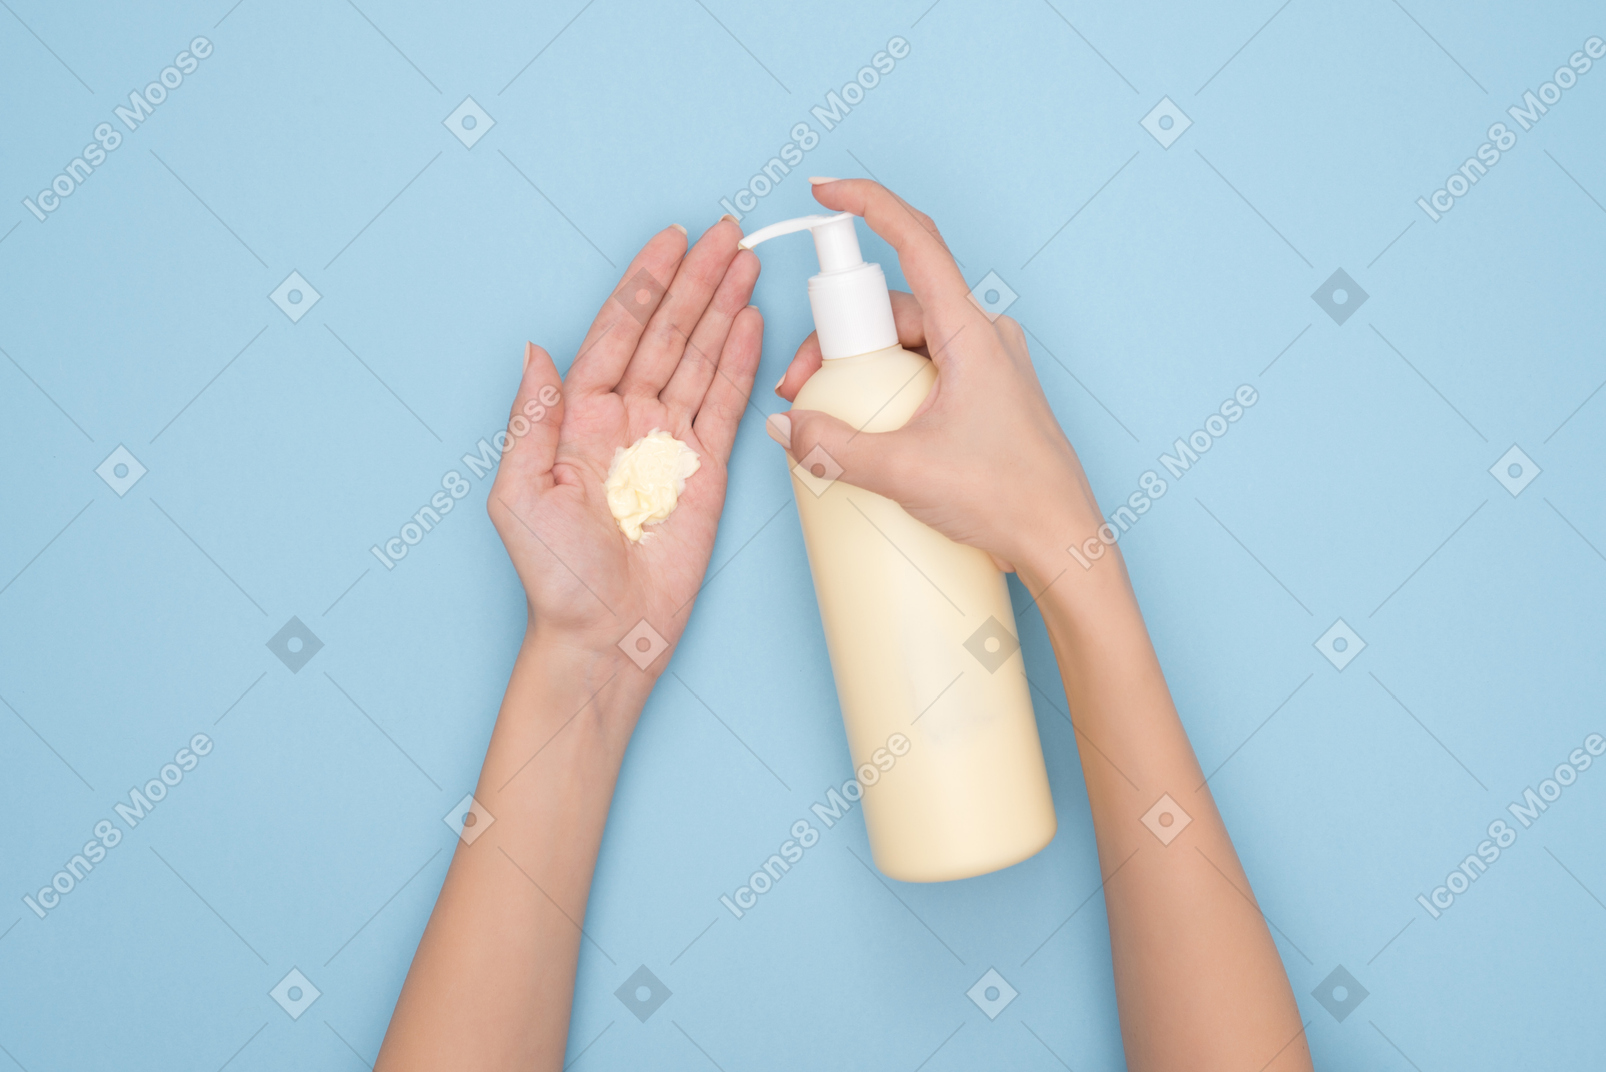 Aplicar crema nutritiva a las manos.